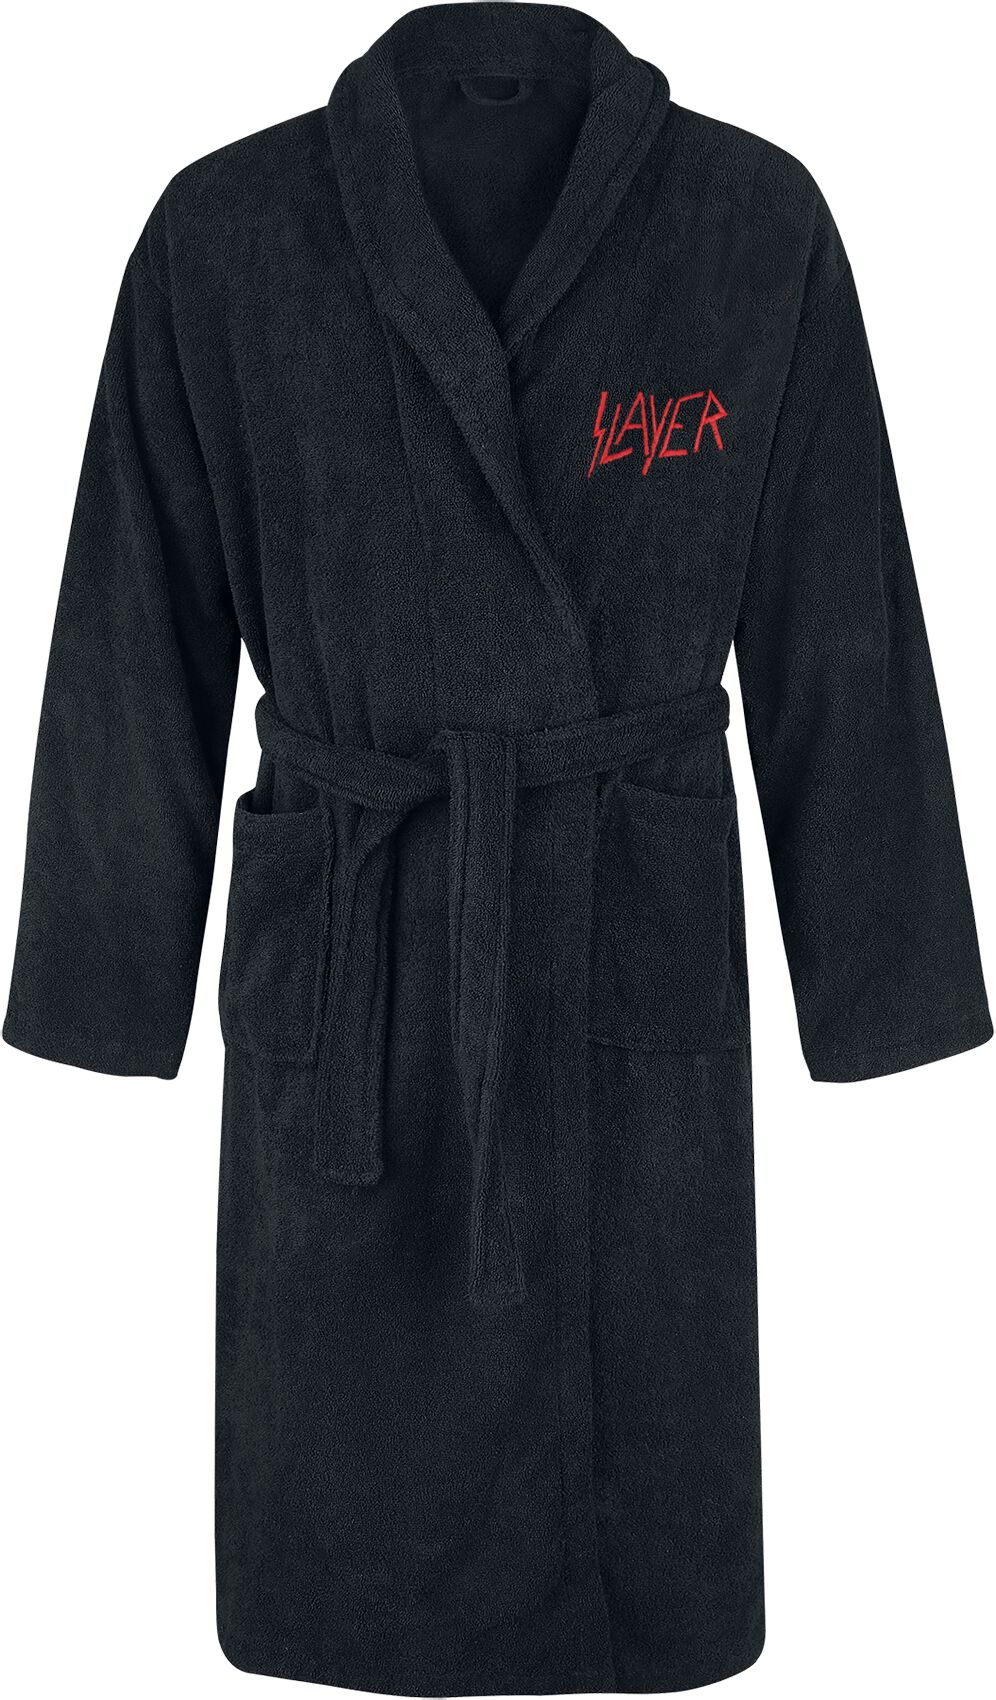 Slayer Bademantel - Logo - S-M bis XXL-3XL - Größe L-XL - schwarz  - EMP exklusives Merchandise!